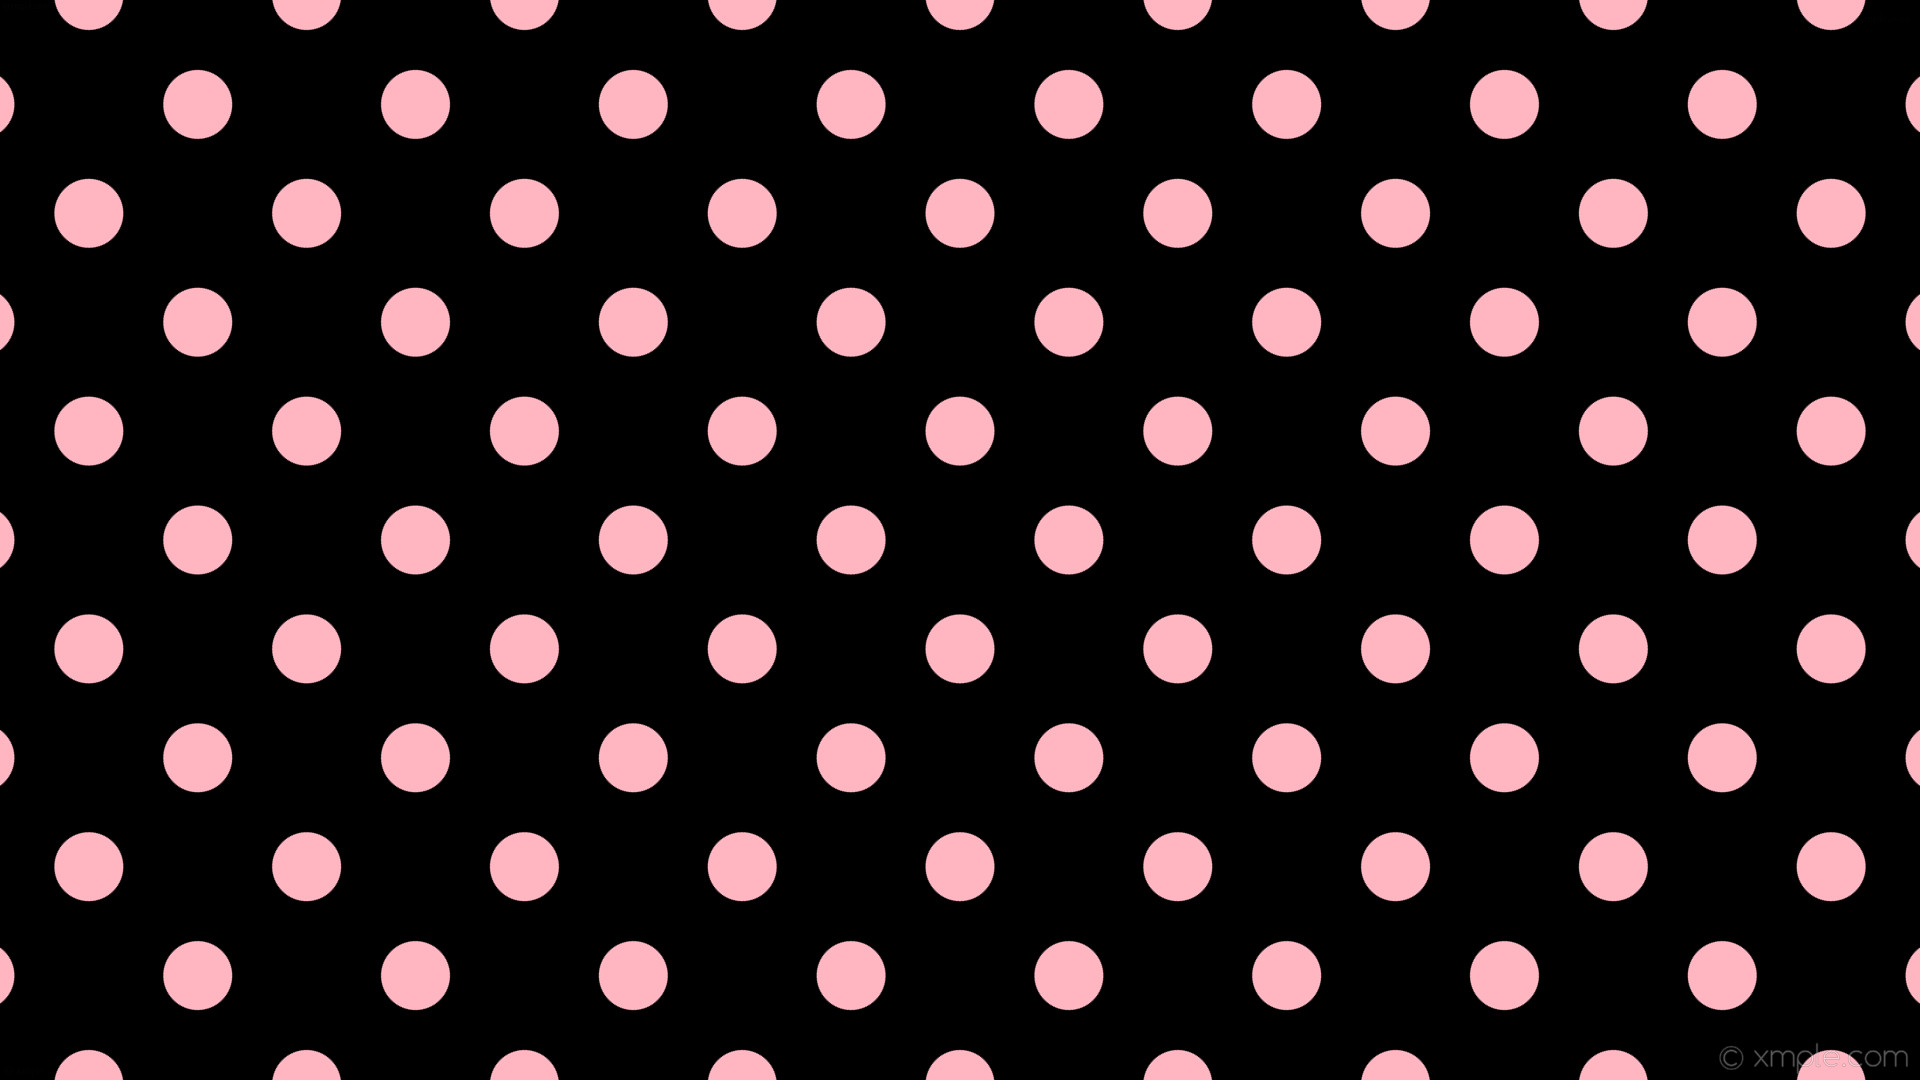 1920x1080 wallpaper spots black pink polka dots light pink #000000 #ffb6c1 45Â° 69px  154px